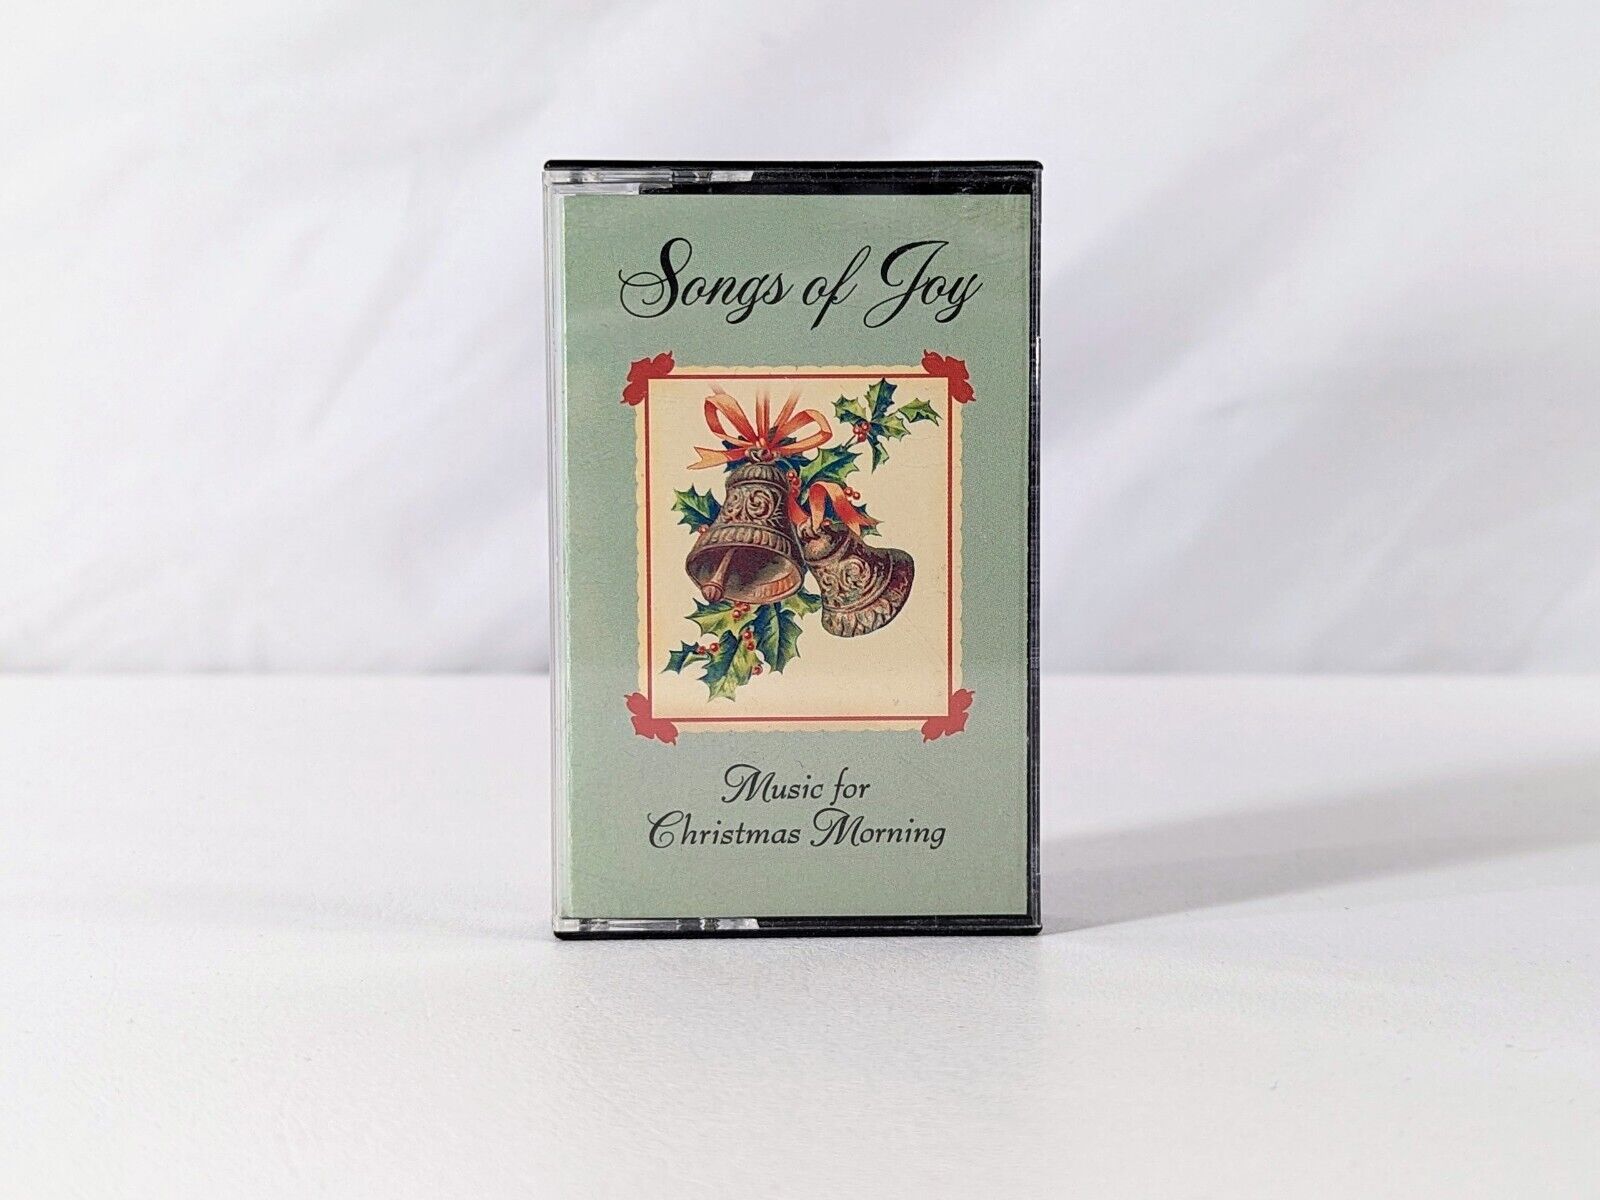 Songs of Joy Music For Christmas Morning Cassette Tape 1990 Hallmark 